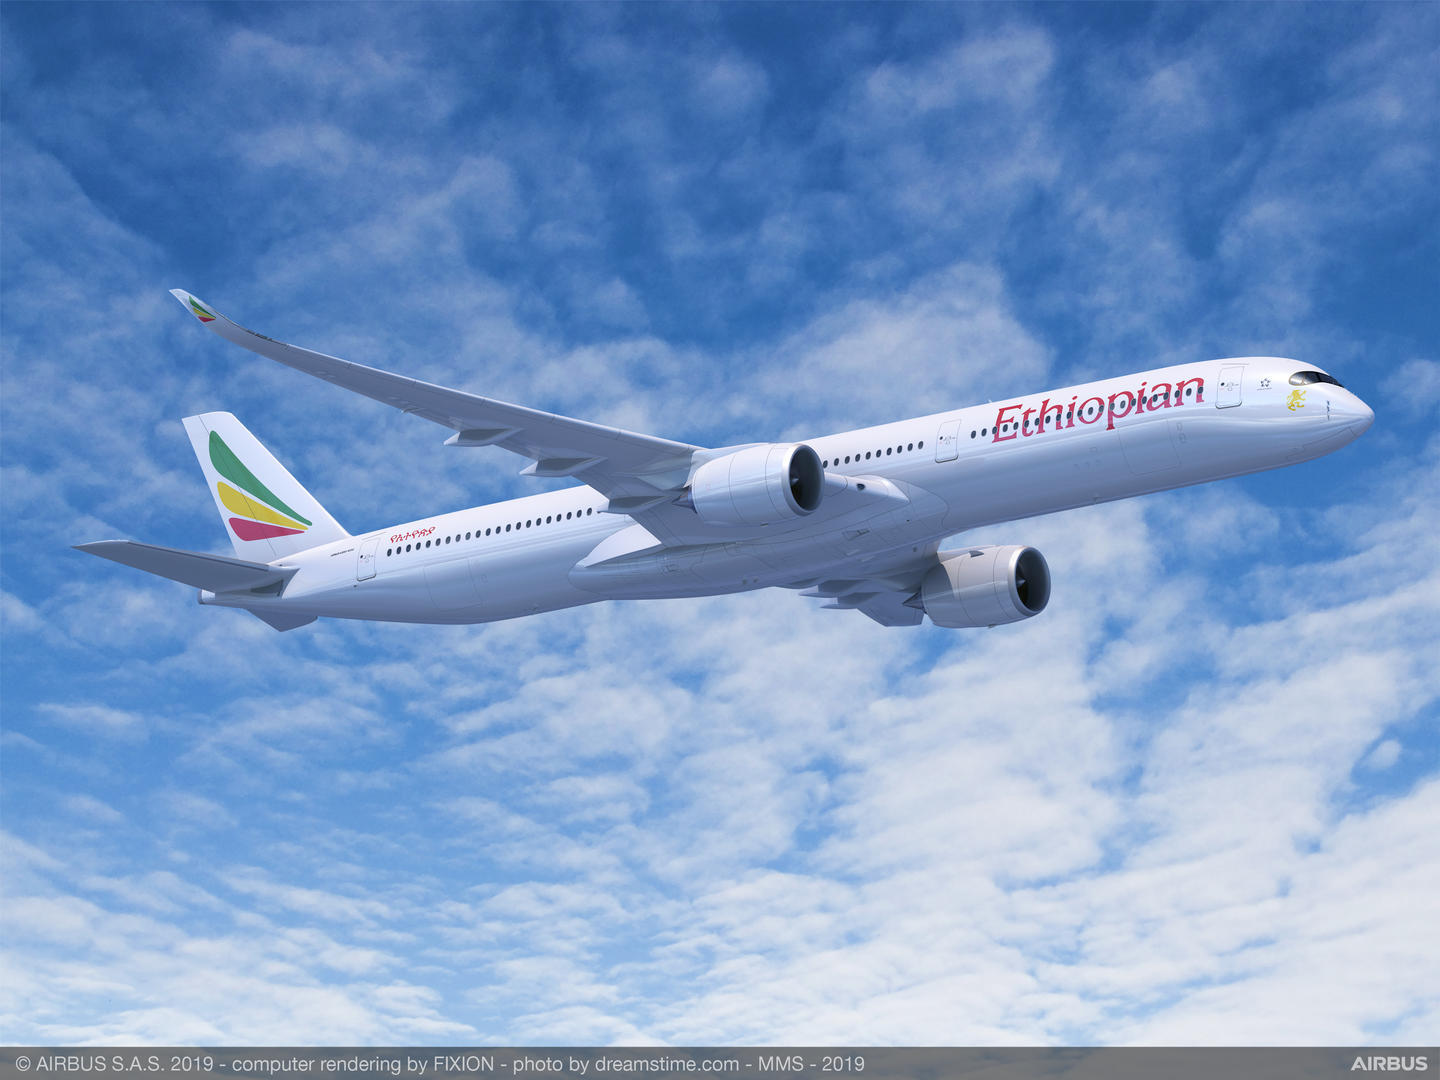 Ethiopian: primeira companhia africana a encomendar o A350-1000